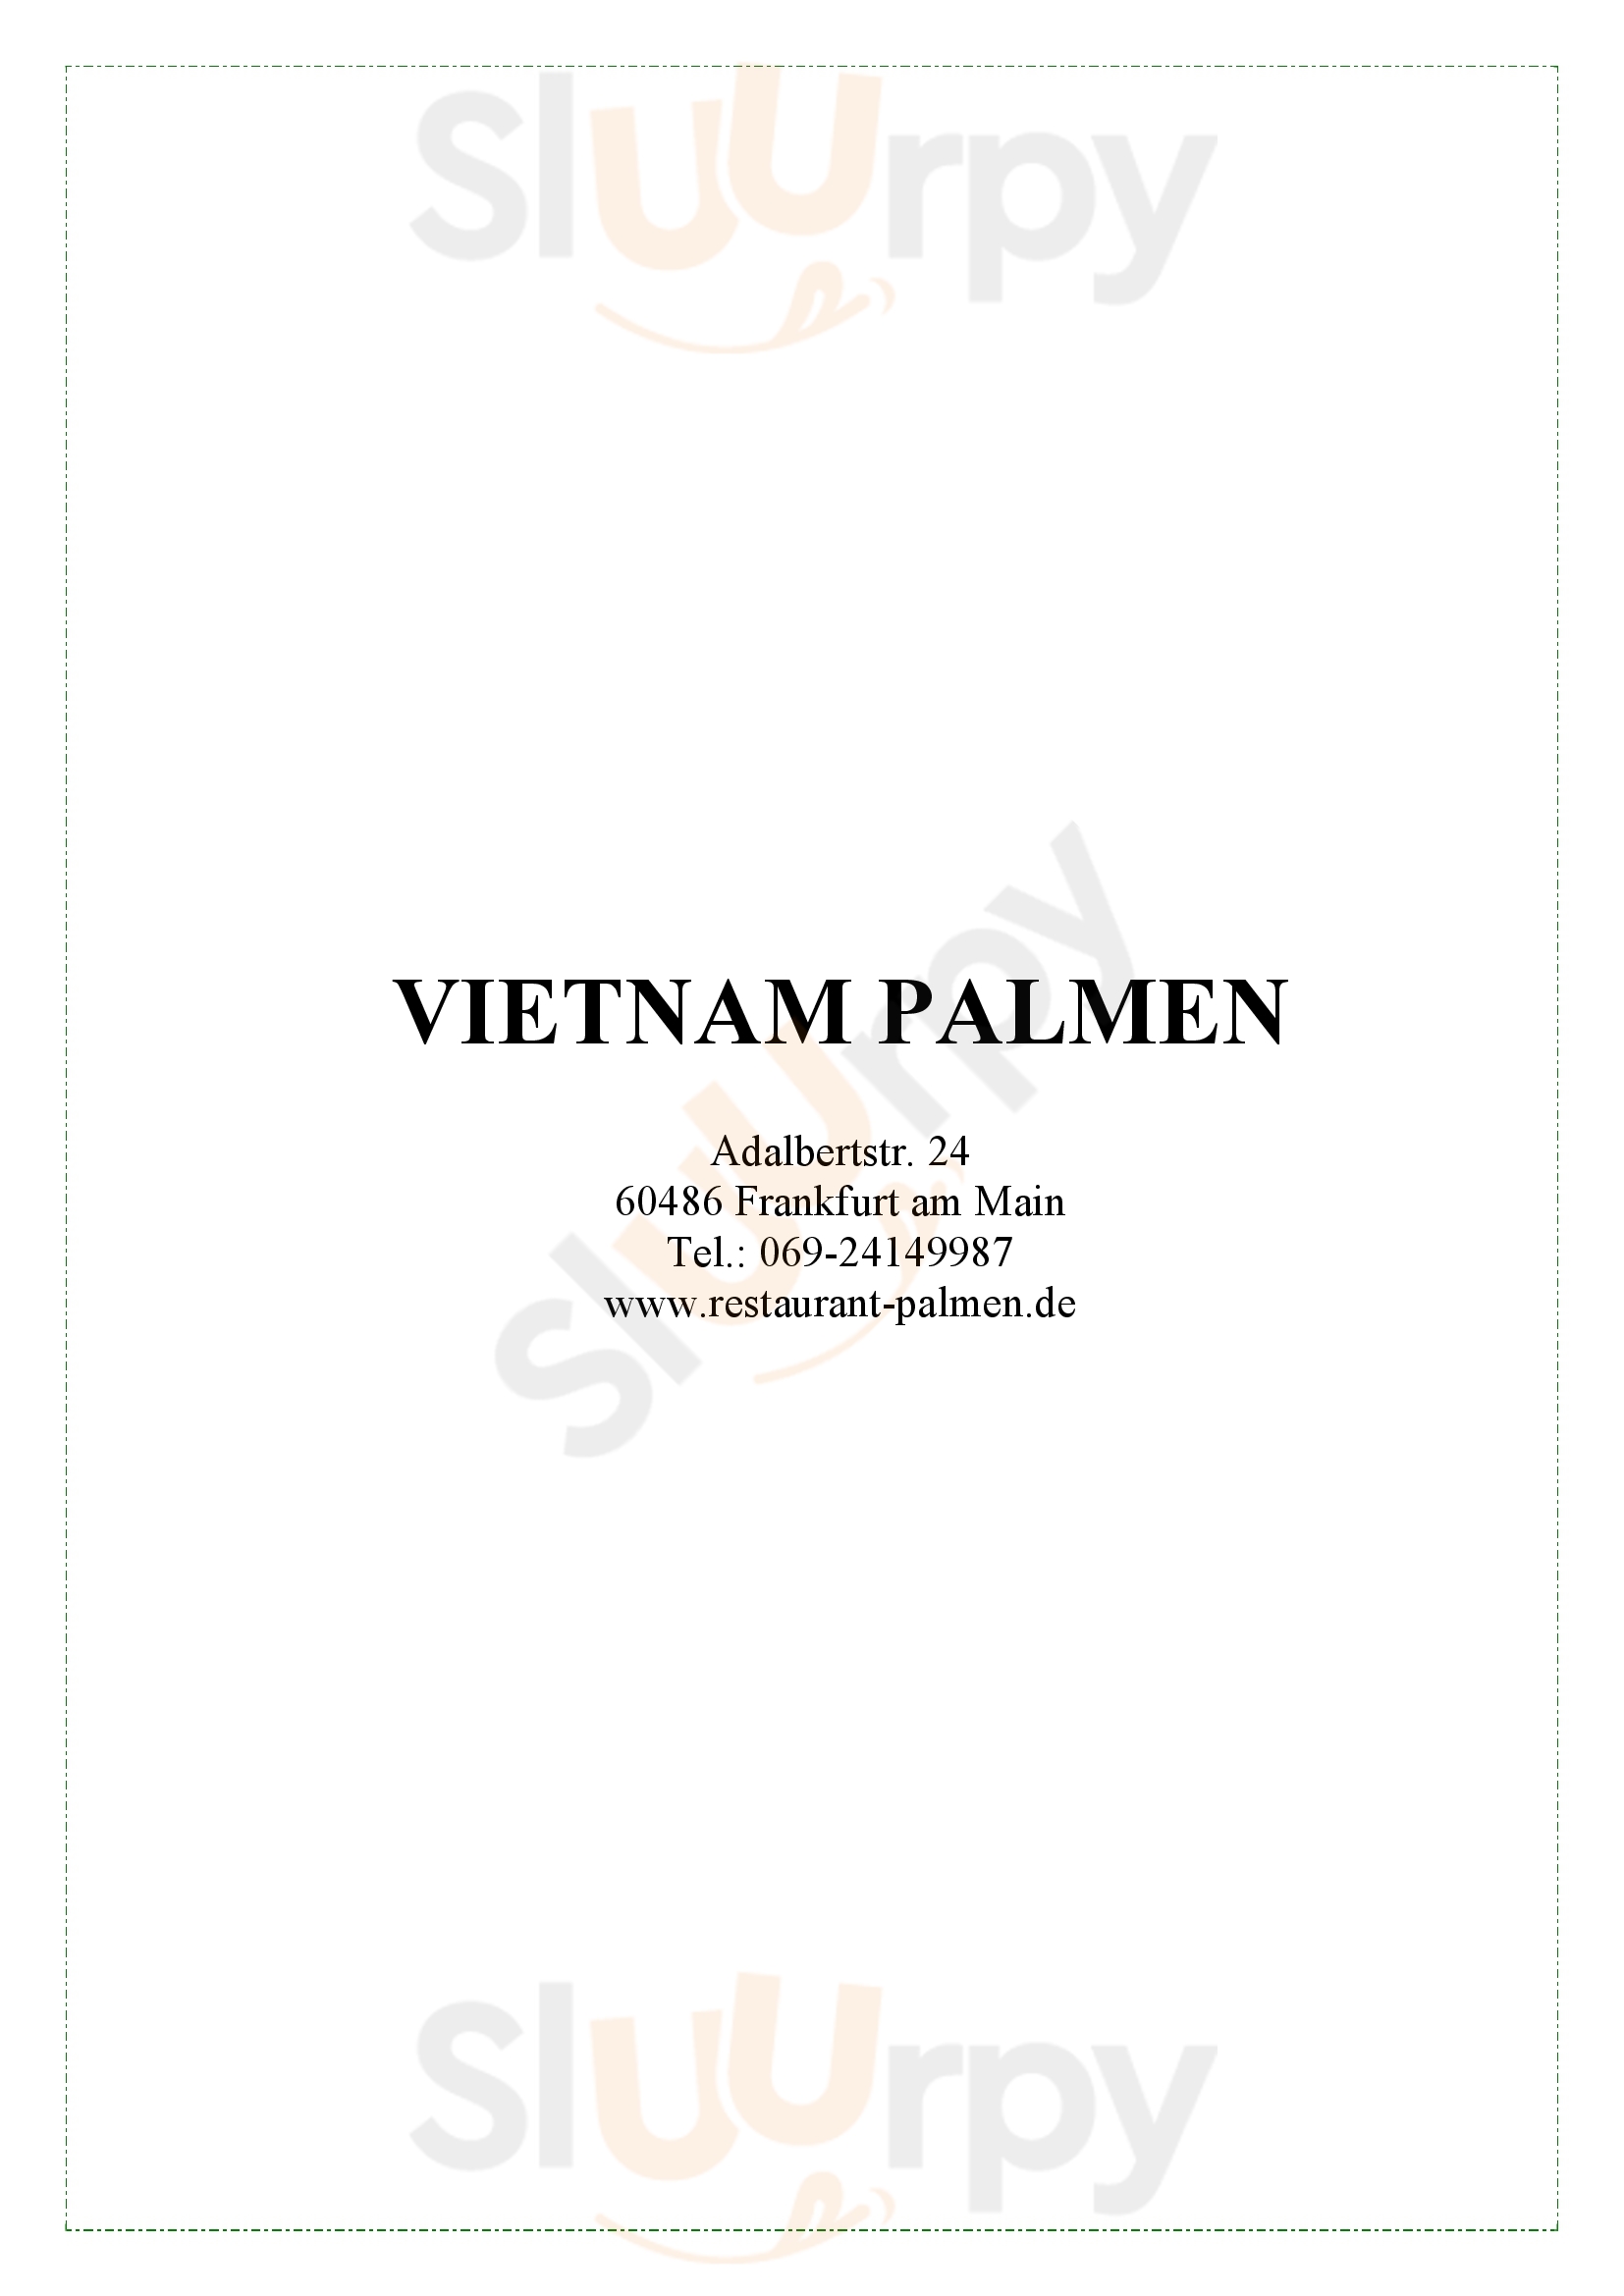 Vietnam Palmen Frankfurt am Main Menu - 1